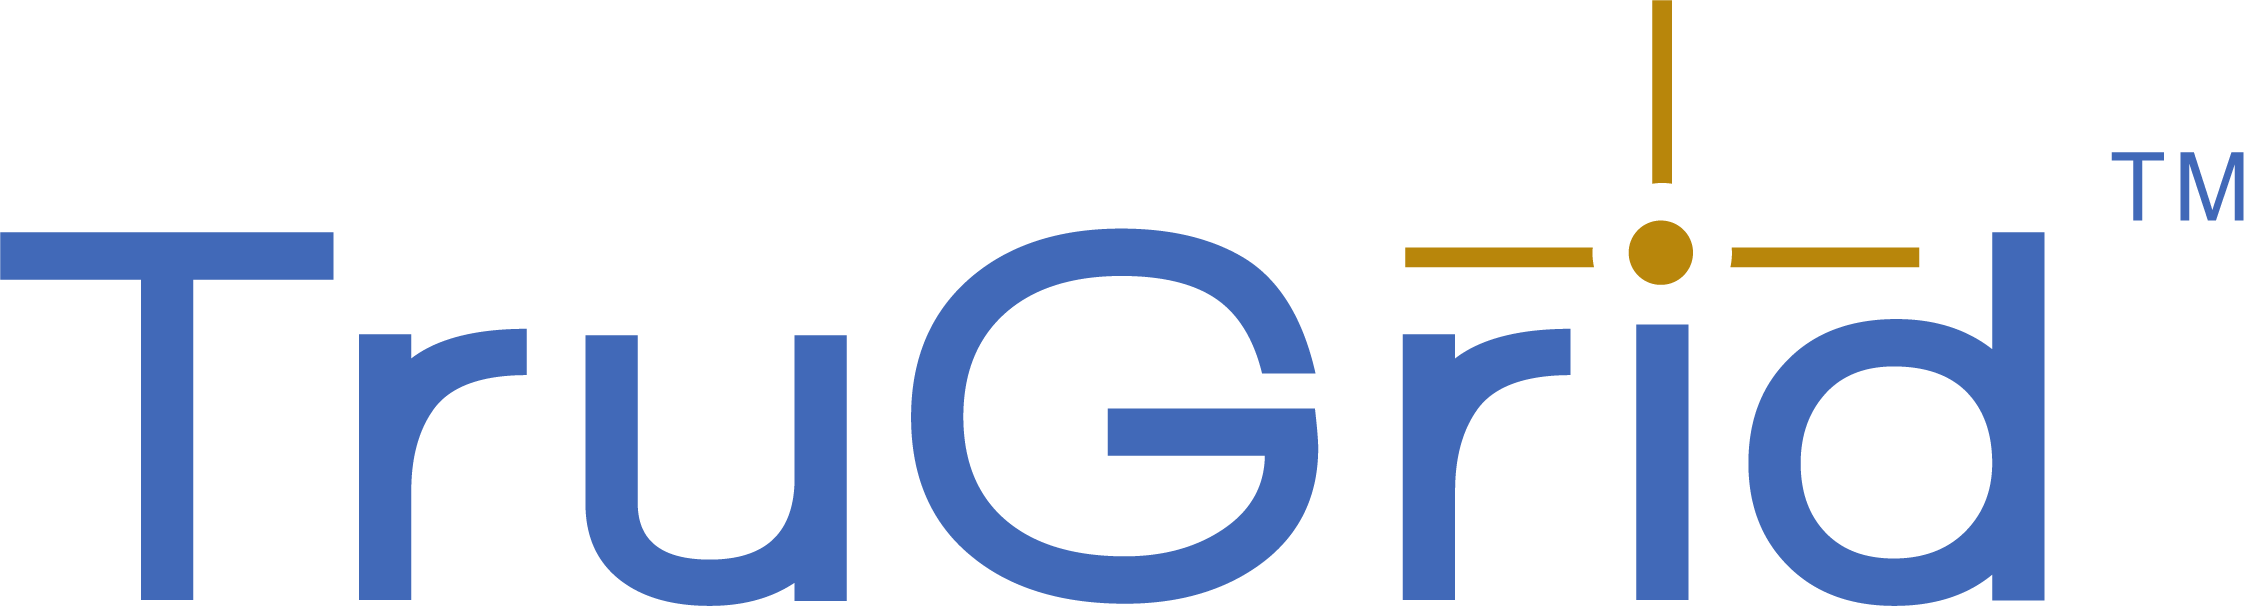 TruGrid logo